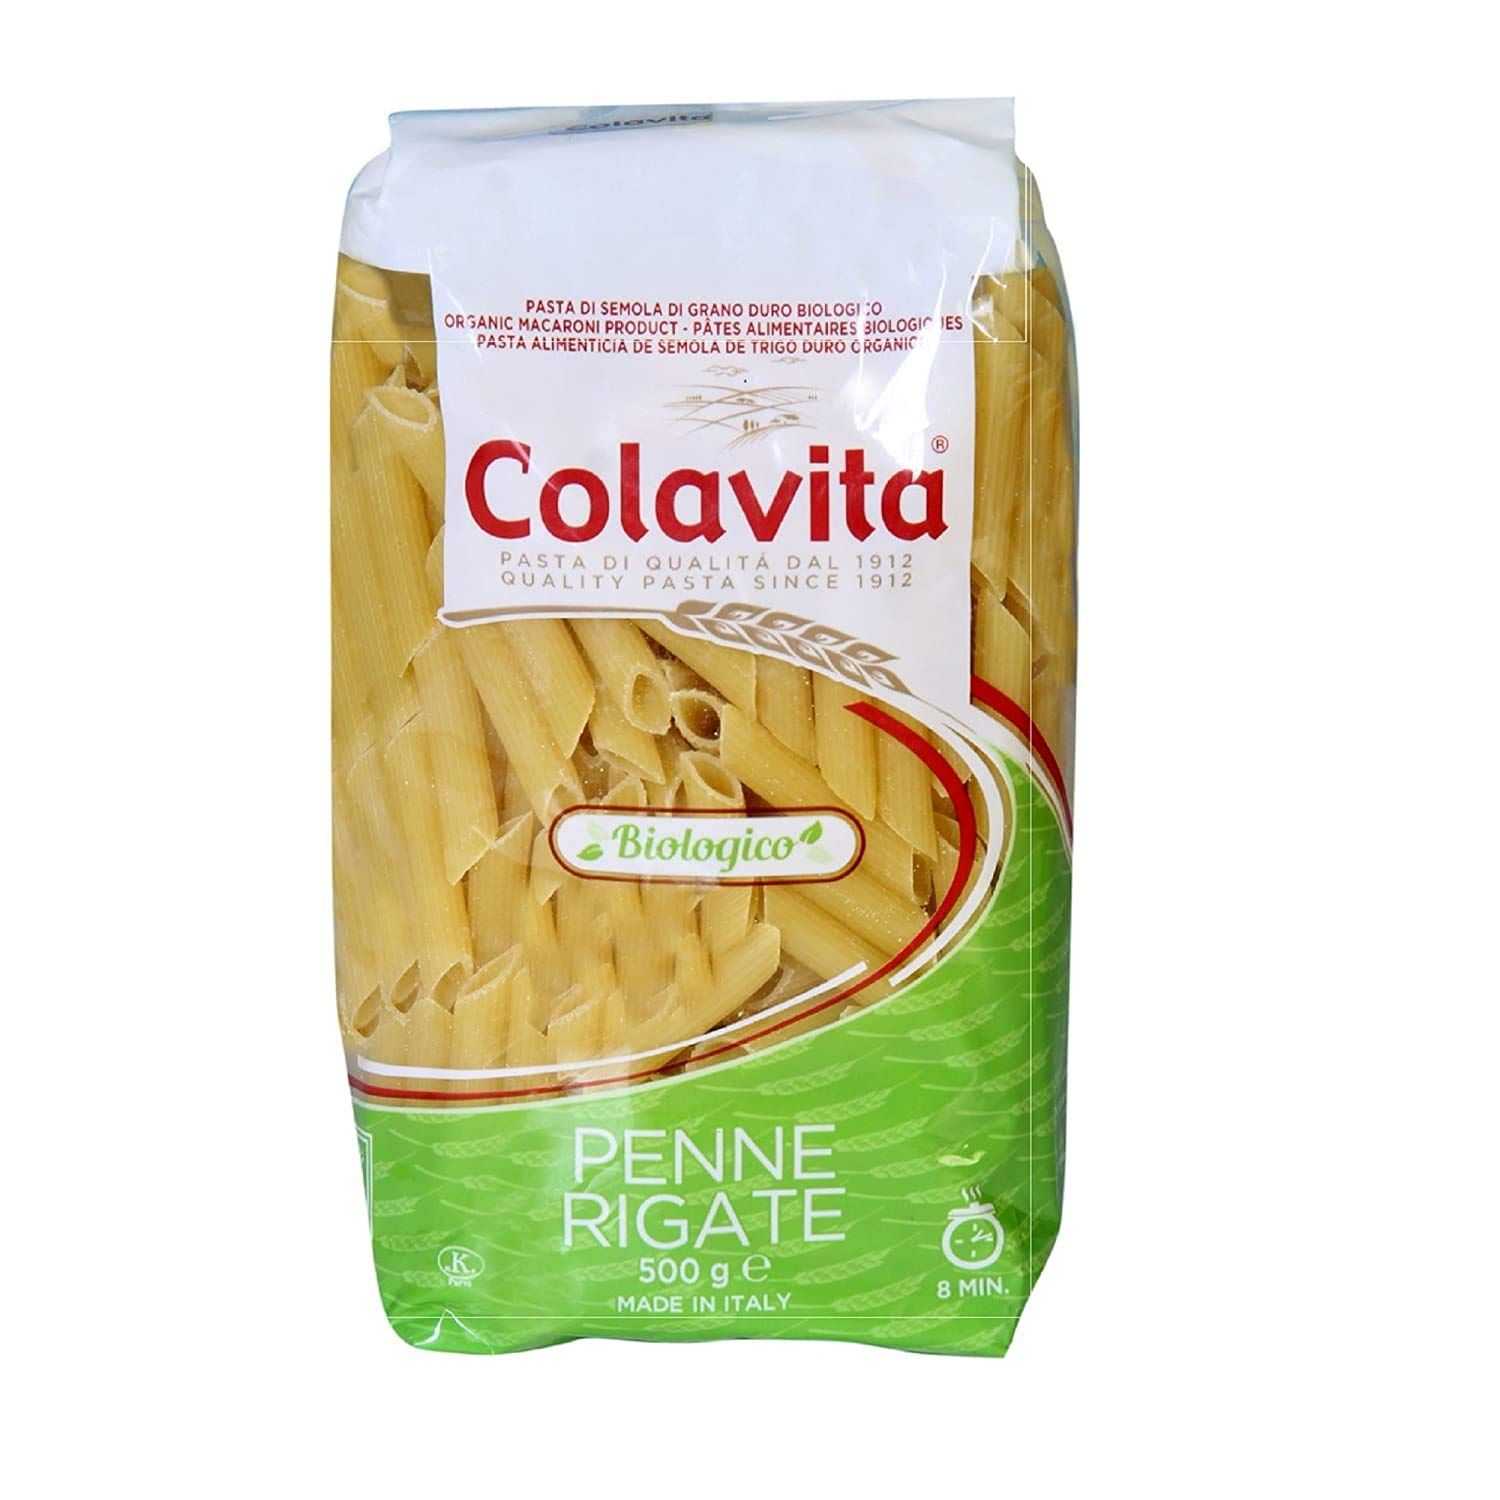 Colavita Penne Rigate Organic Pasta Image